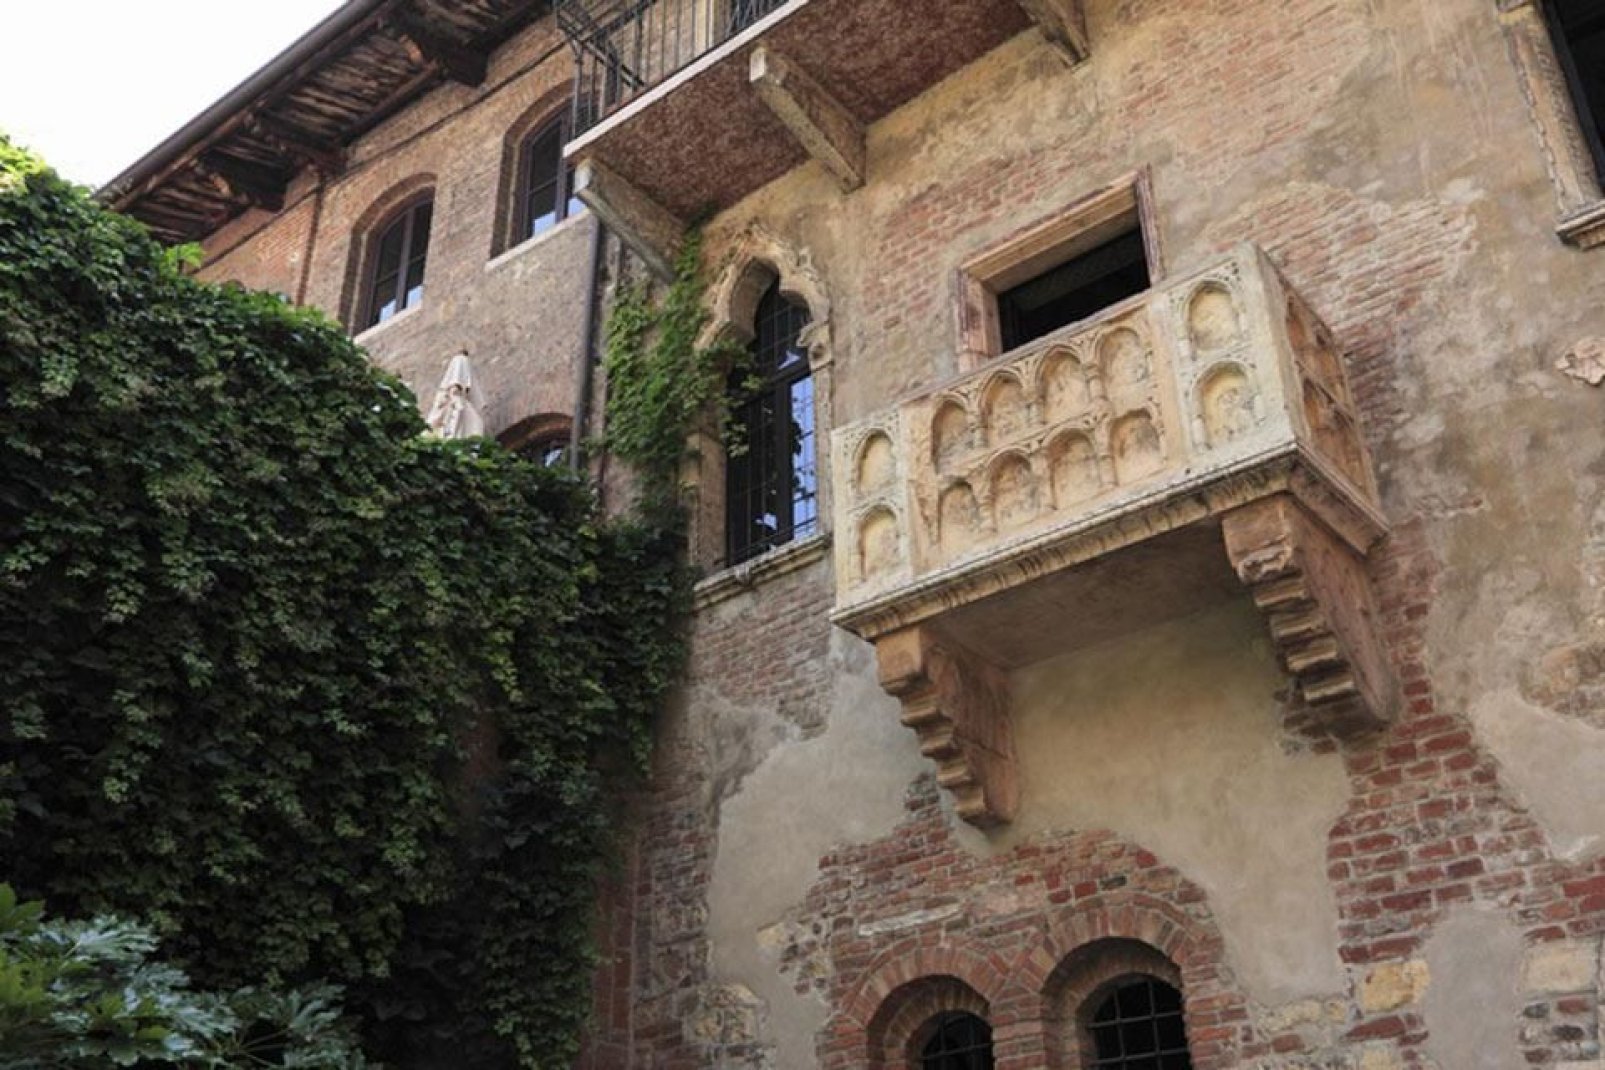 La leggenda vuole che da questo balcone Giulietta si affacciasse per scorgere Romeo oltre la siepe. Sulla casa giace ancora lo stemma medievale della famiglia Capuleti.